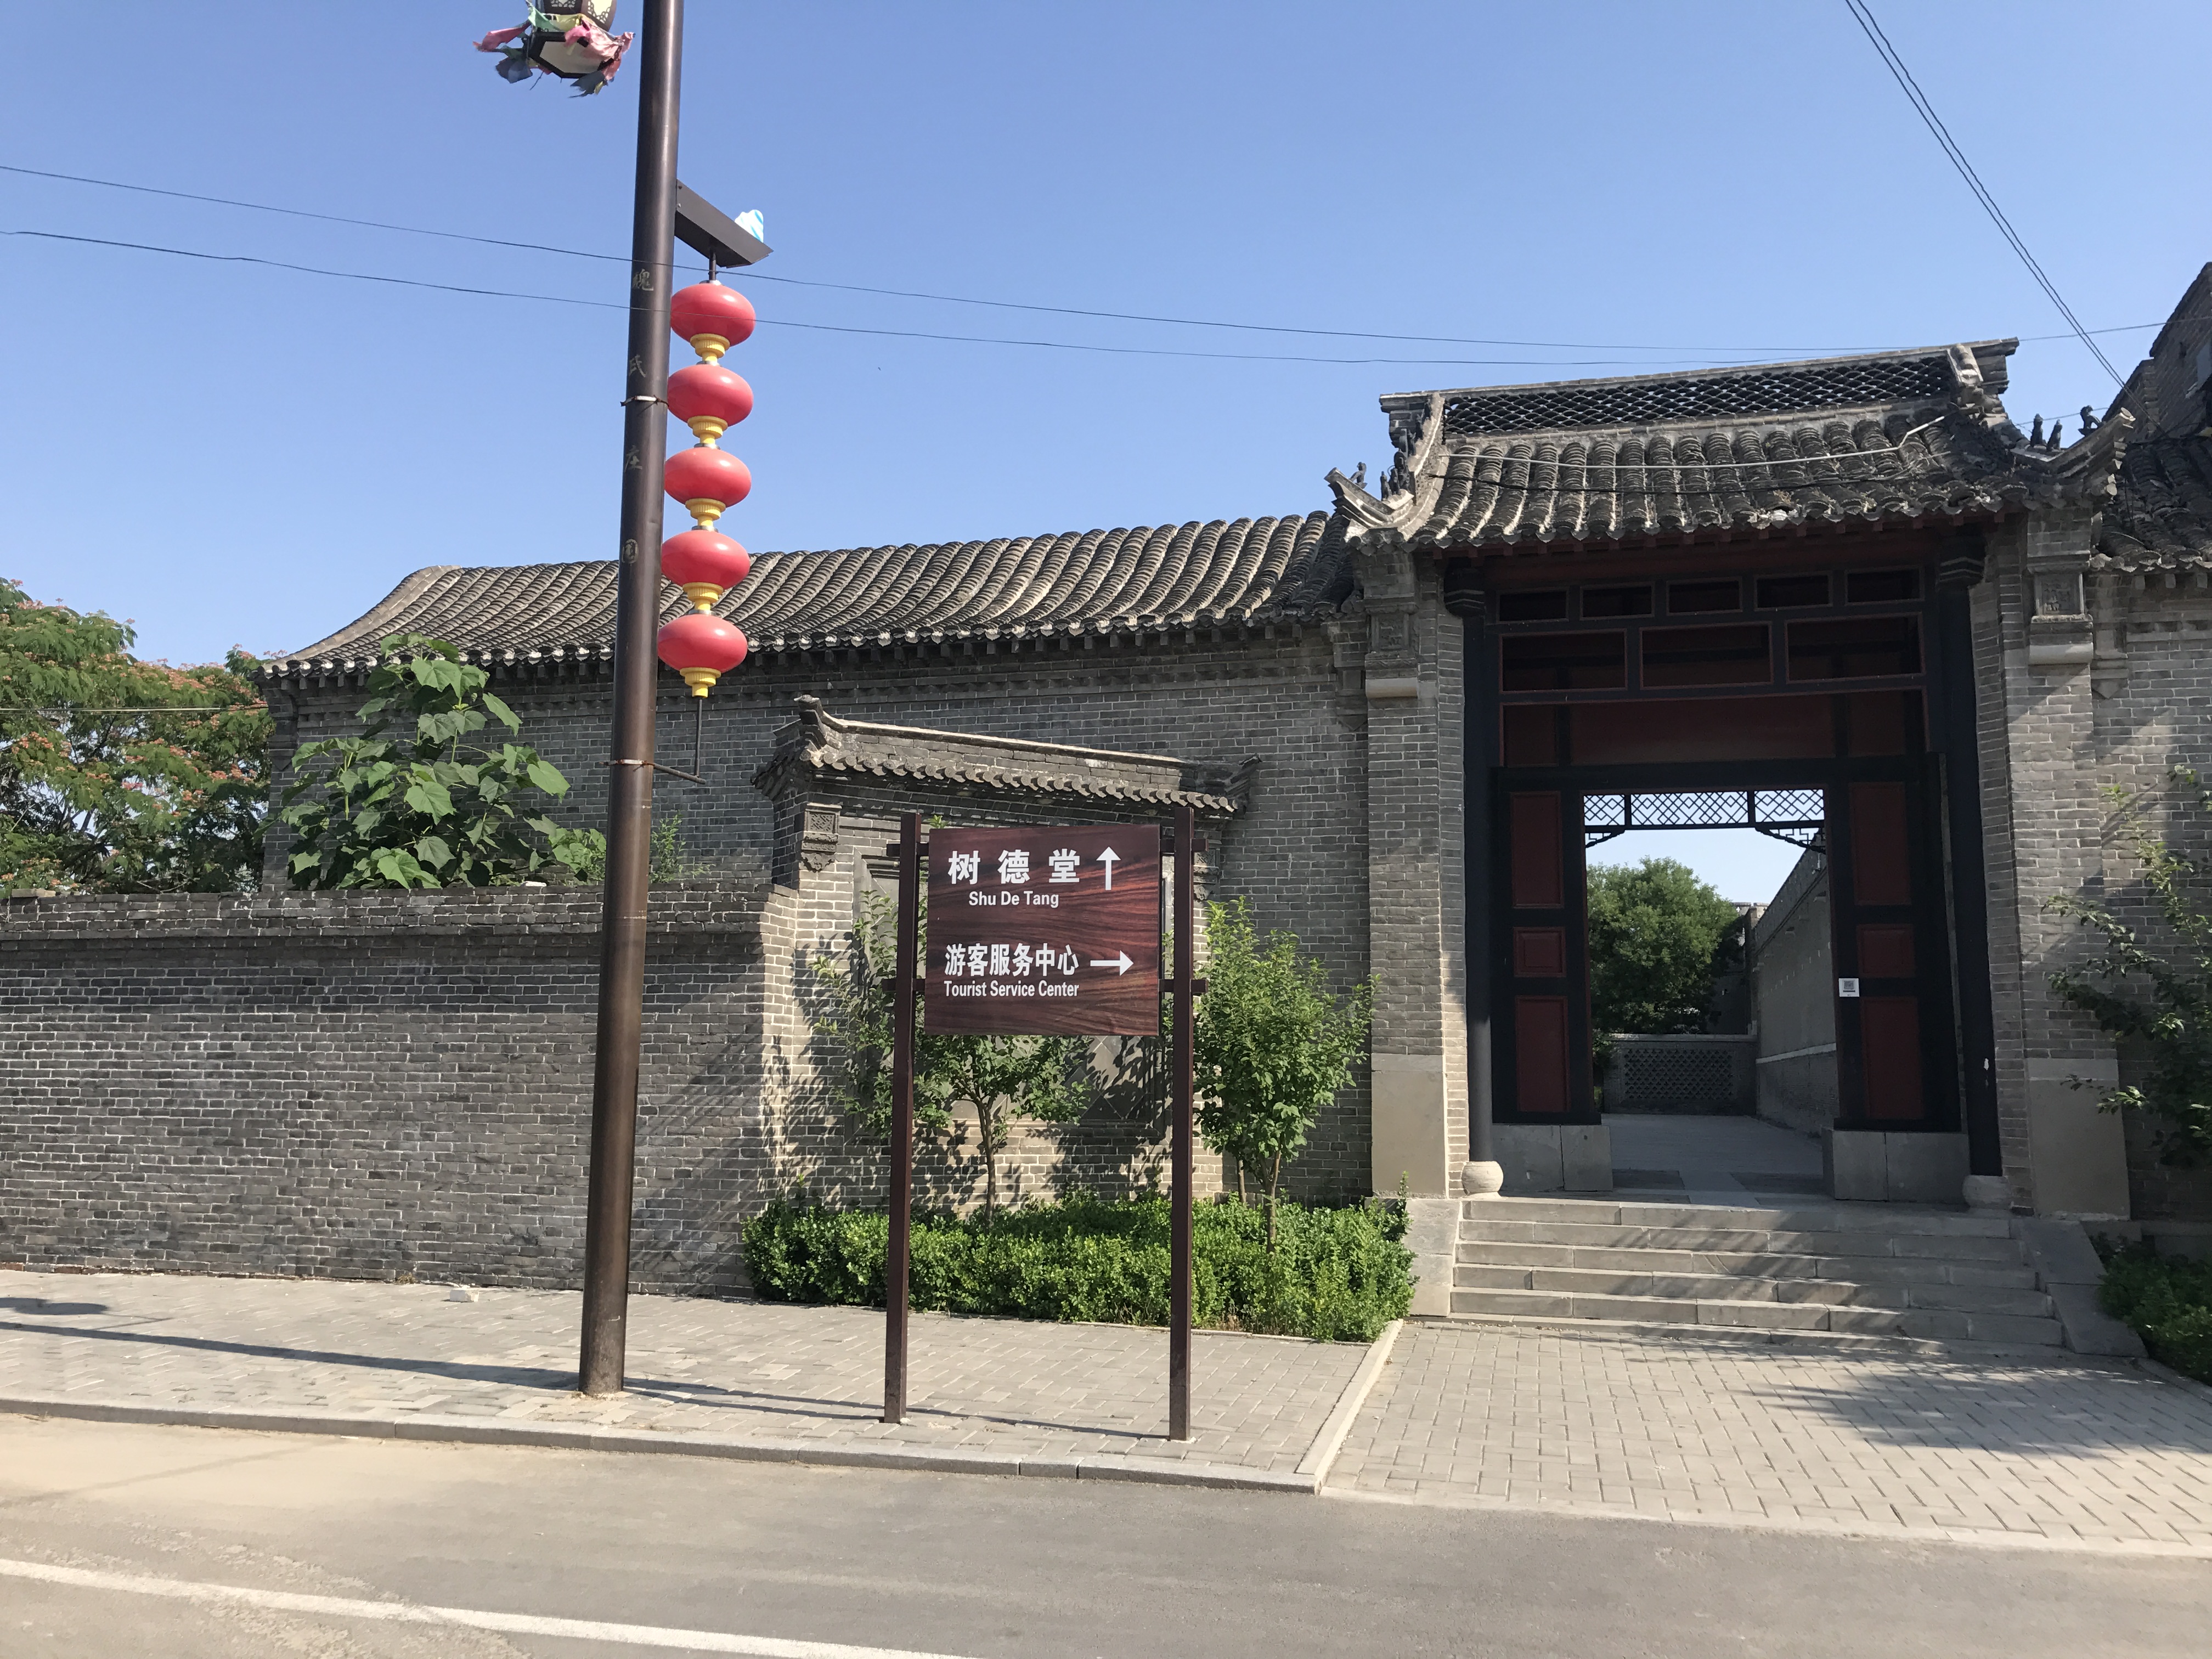 刘氏庄园 - 图游安仁 - 安仁古镇旅游官方网站